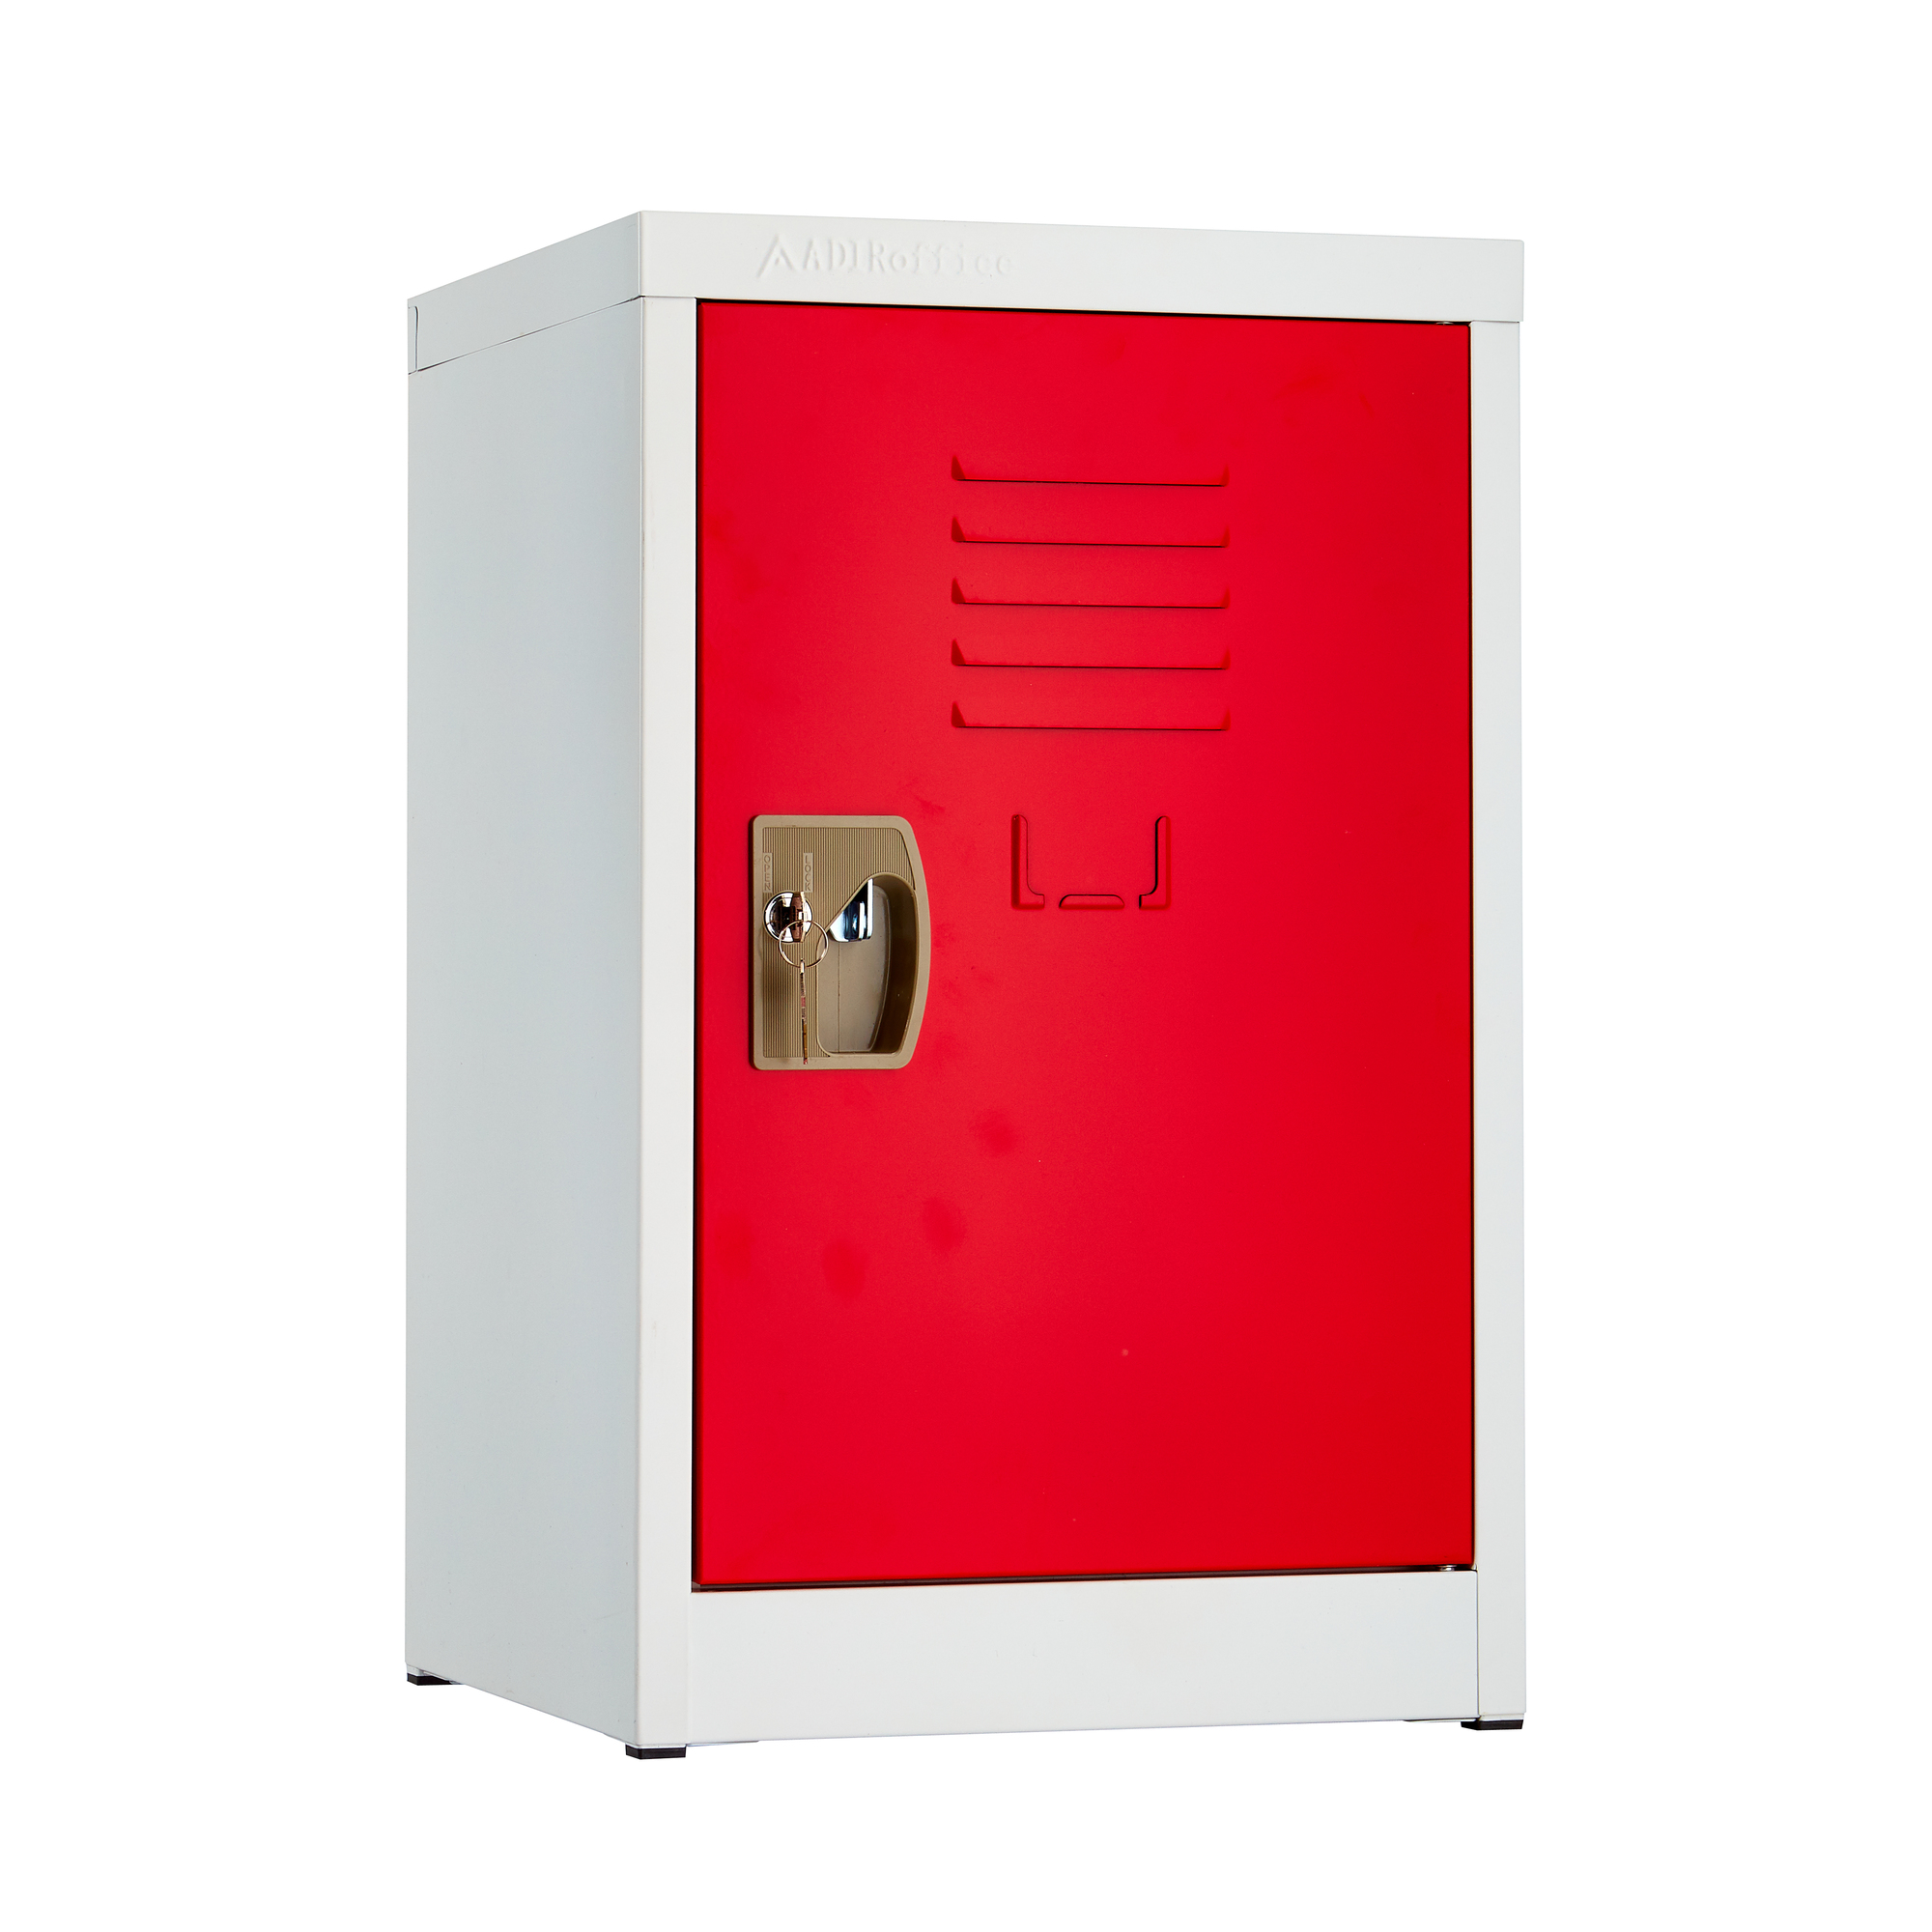 Alpine, 24ft.' Single Tier Locker for Kids â Red, Height 24 in, Width 15 in, Color Red, Model ADI629-02-RED